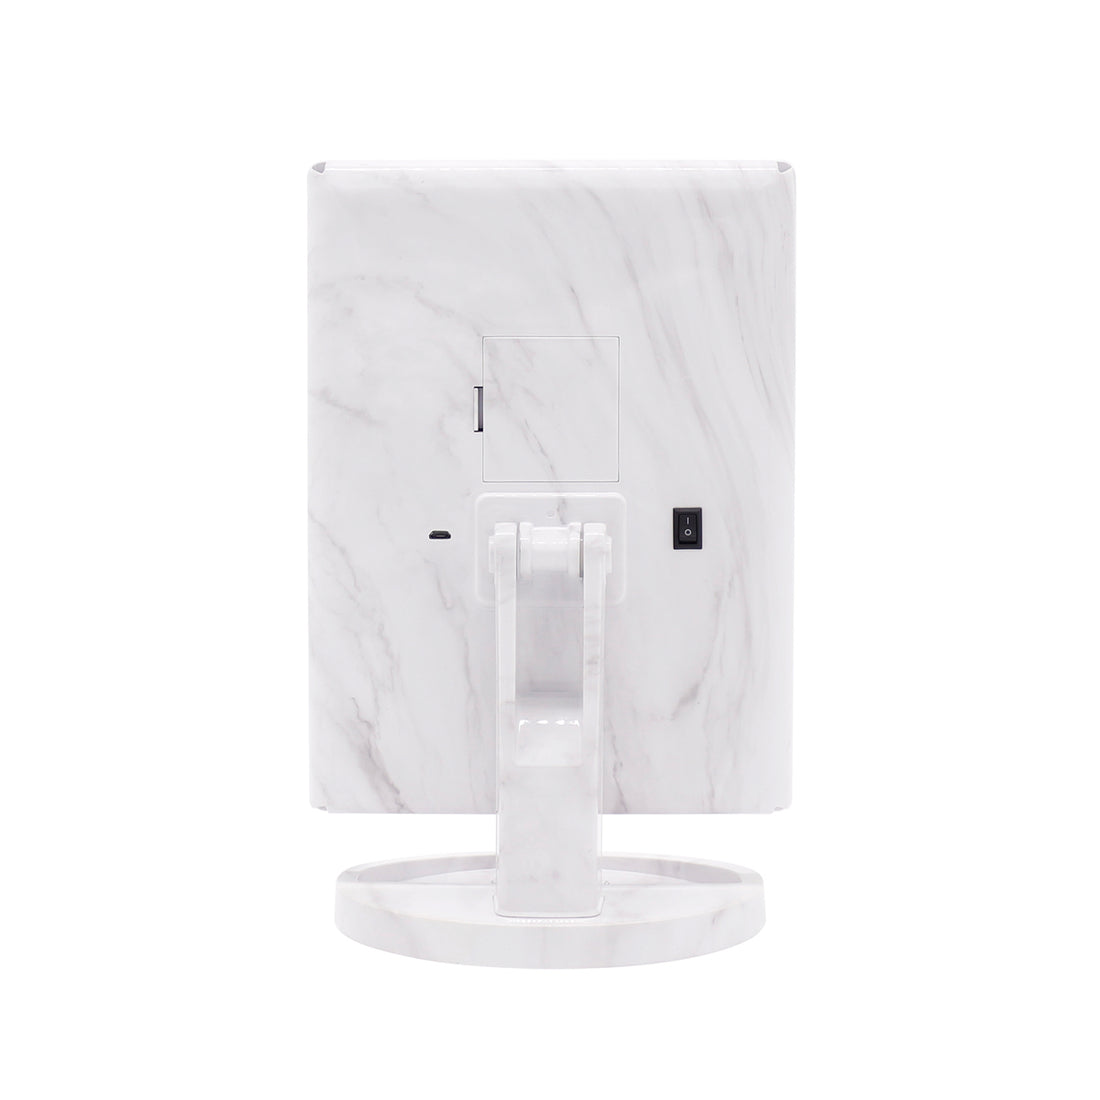 Impressions Vanity - Specchio da scrivania con luci e sensore Soft Touch,  regolabile, tre tonalità, illuminato a LED, con vassoio estensibile  nascosto e supporto per telefono : : Casa e cucina